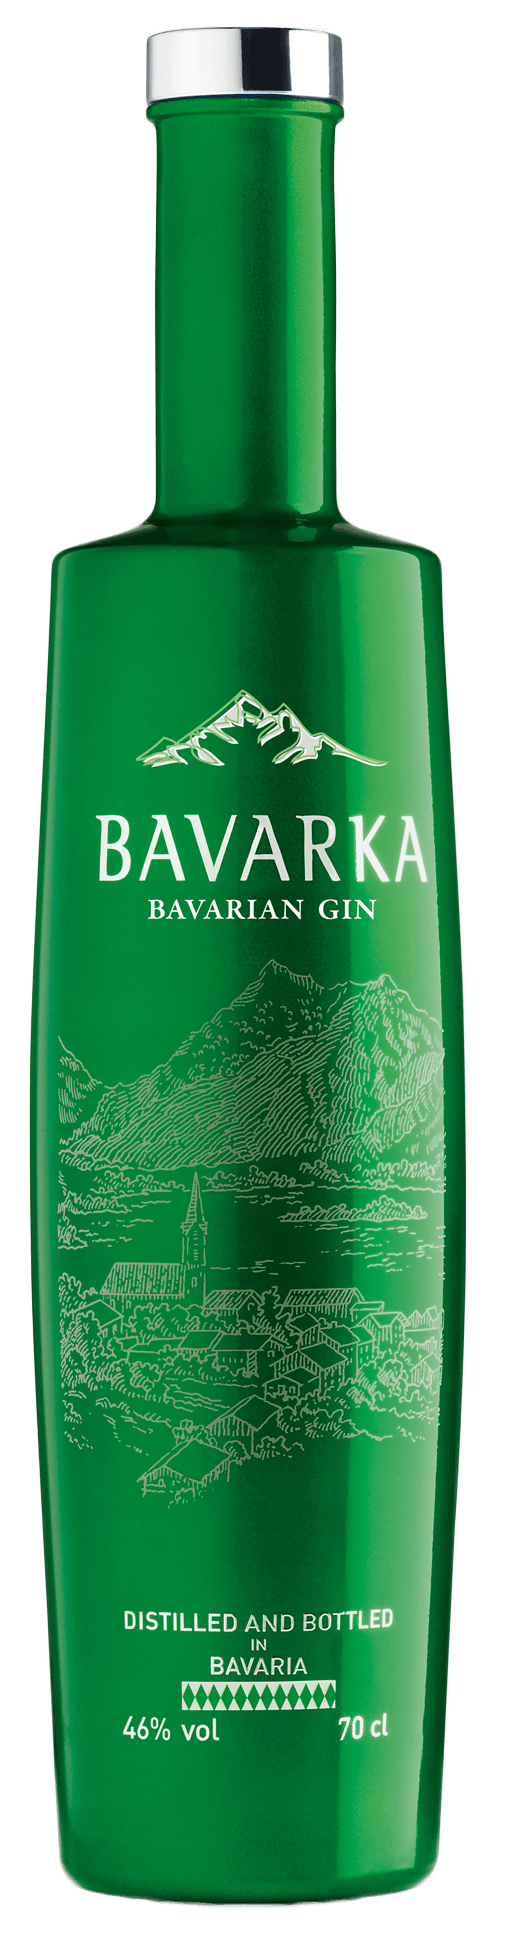 Bavarka Bavarian Gin 46%